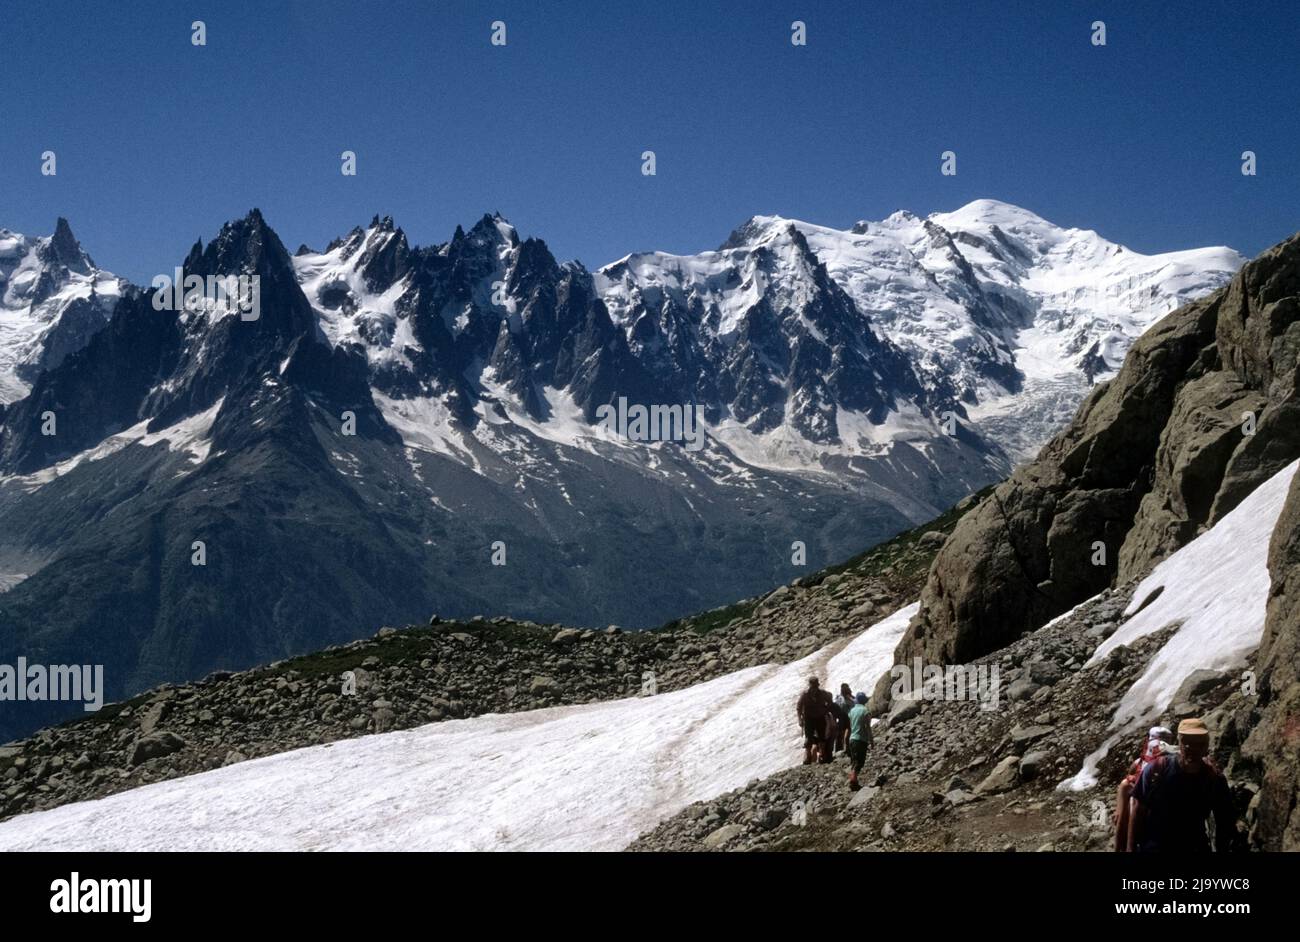 Les aiguilles du Chamonix (la chaîne du Mont blanc) vue du sentier de randonnée de la Flégère au Lac blanc, Chamonix-Mont-blanc, France 1990 Banque D'Images